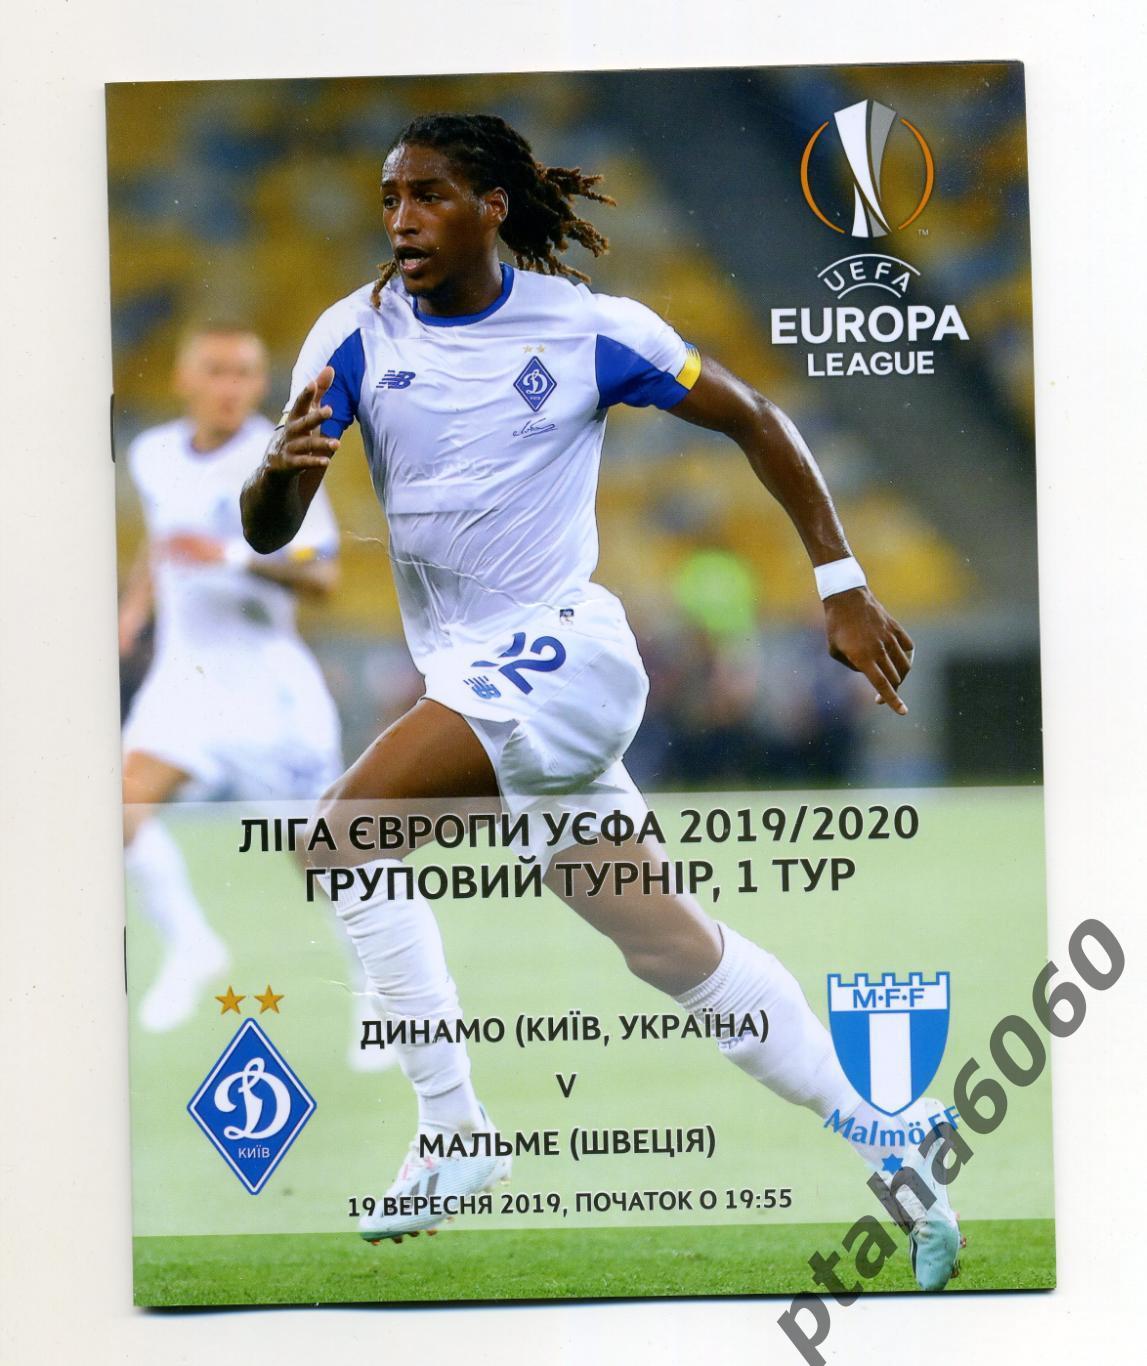 Лига Европы УЕФА Групповой турнир 1 тур 2019/2020 Динамо-Мальме